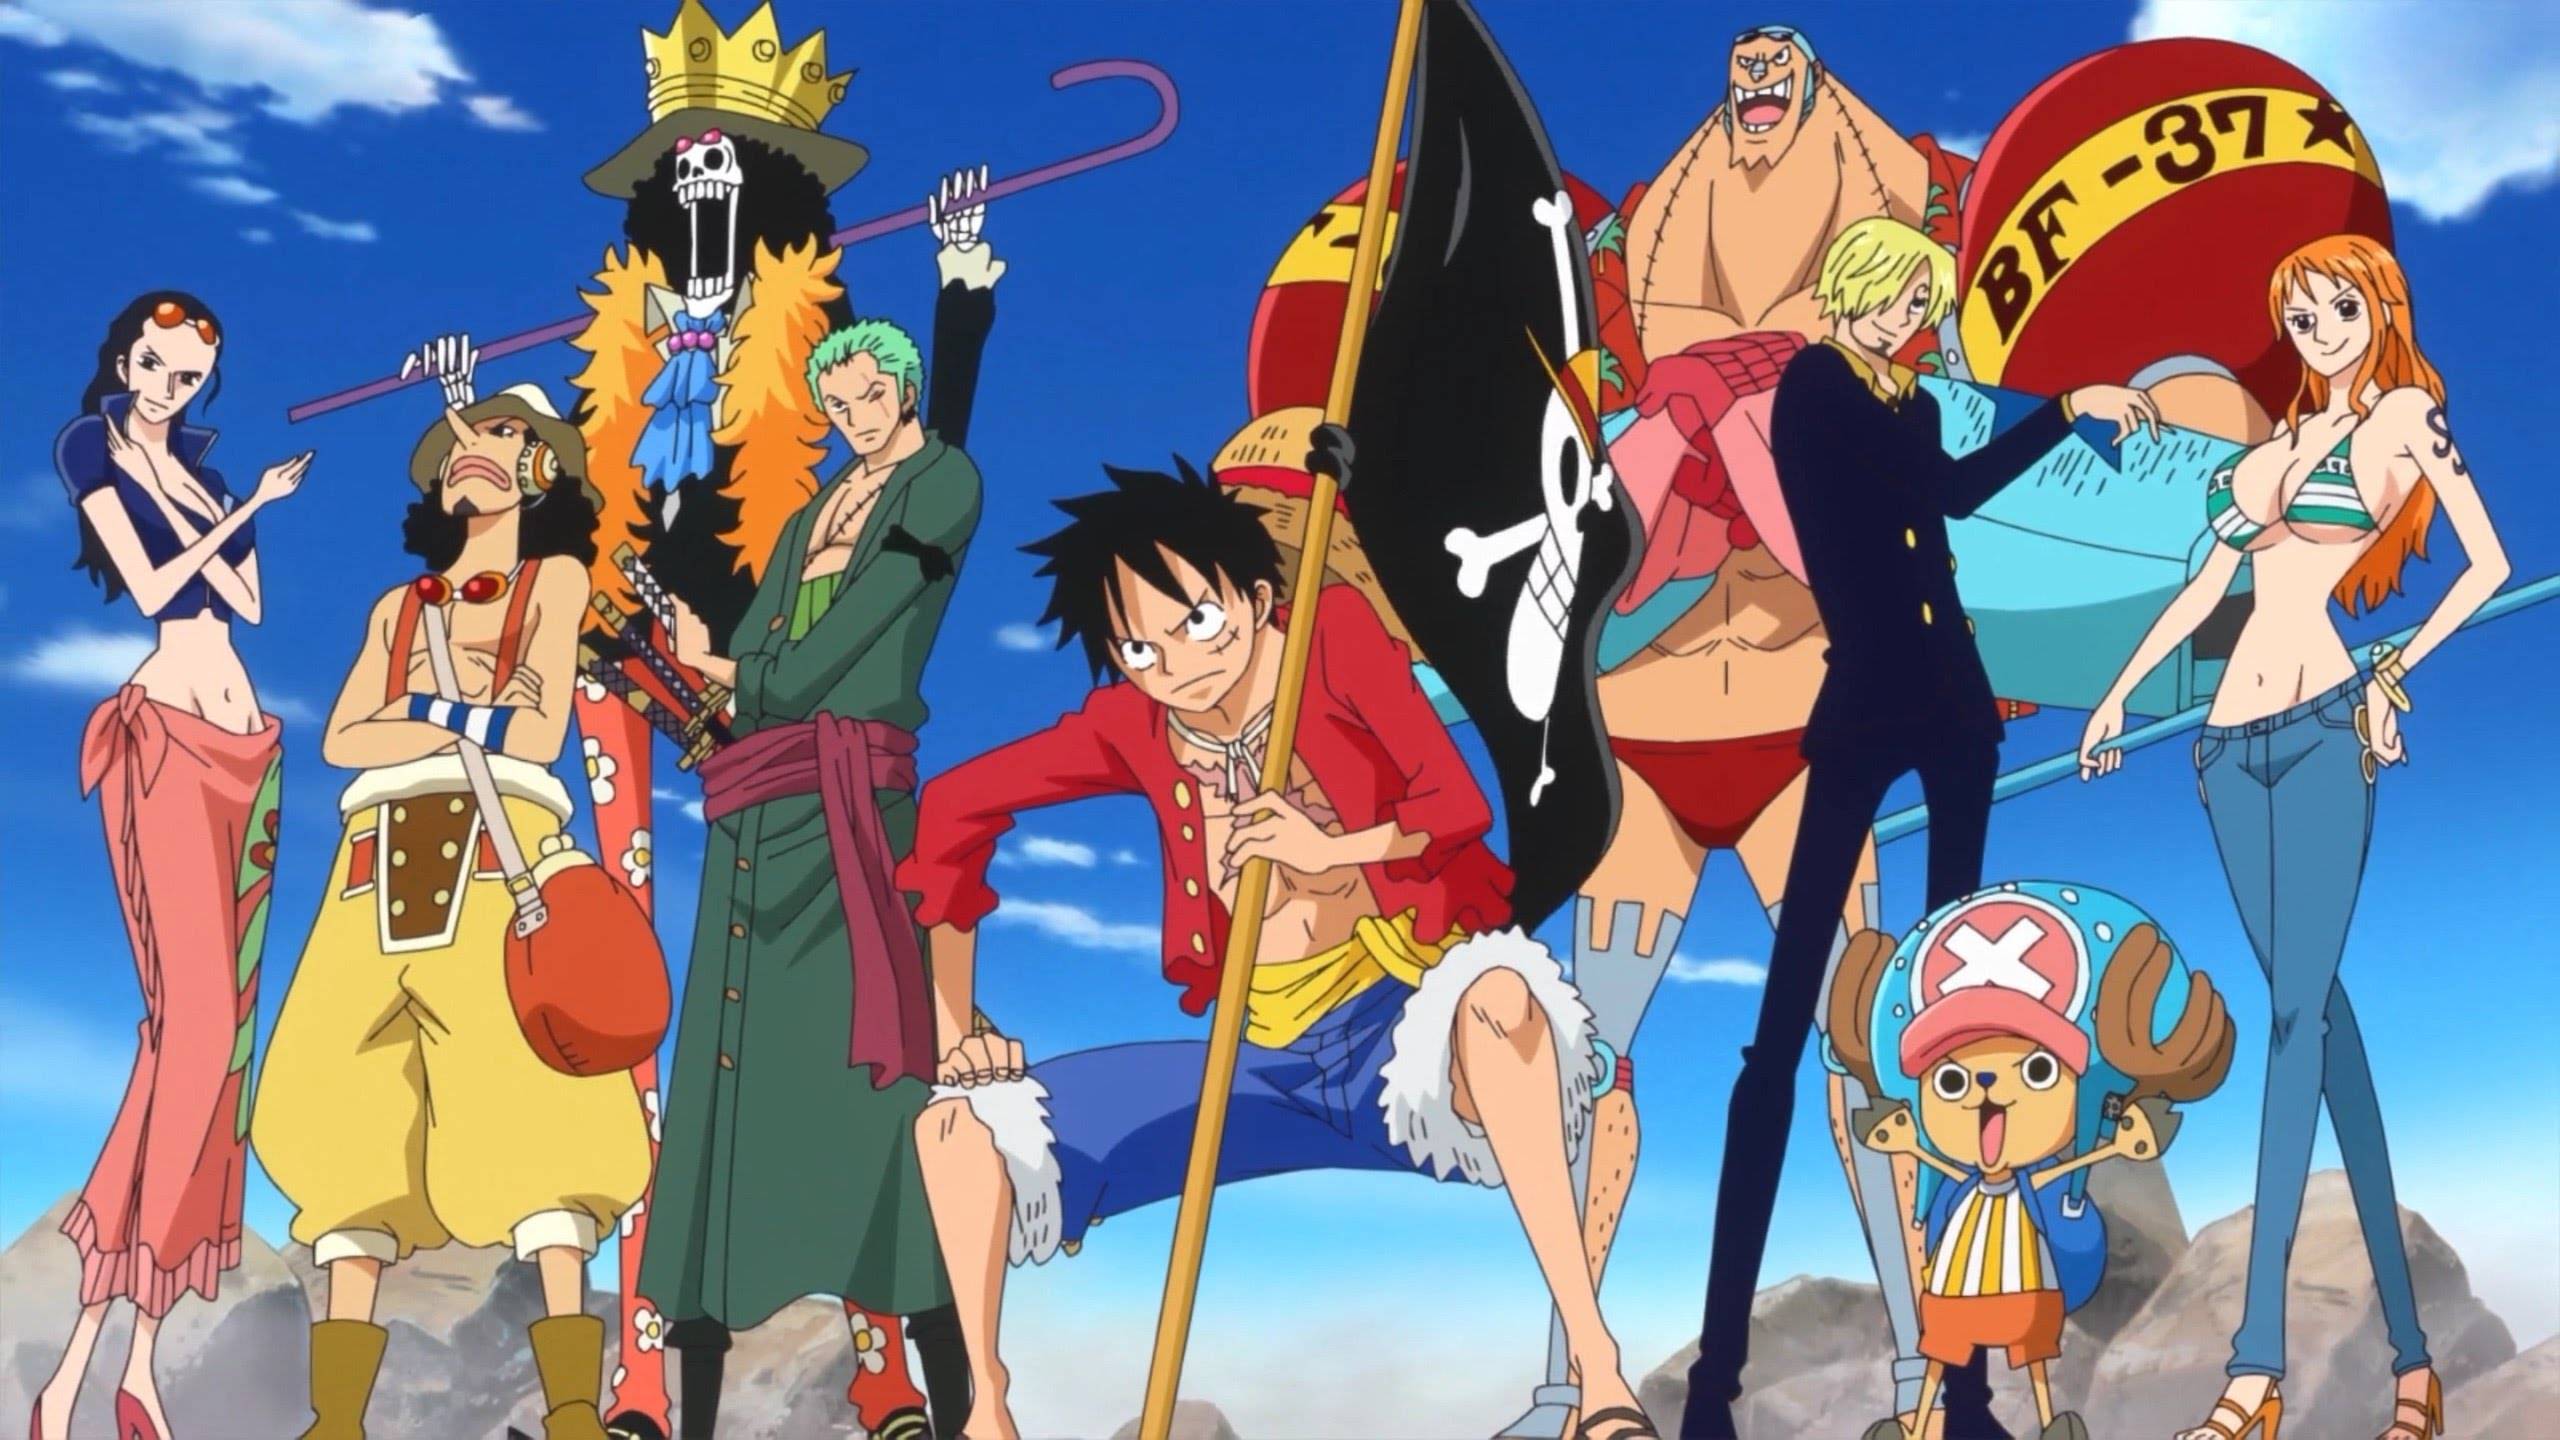 CODA fecha vários sites de anime pirata #animes #noticias 